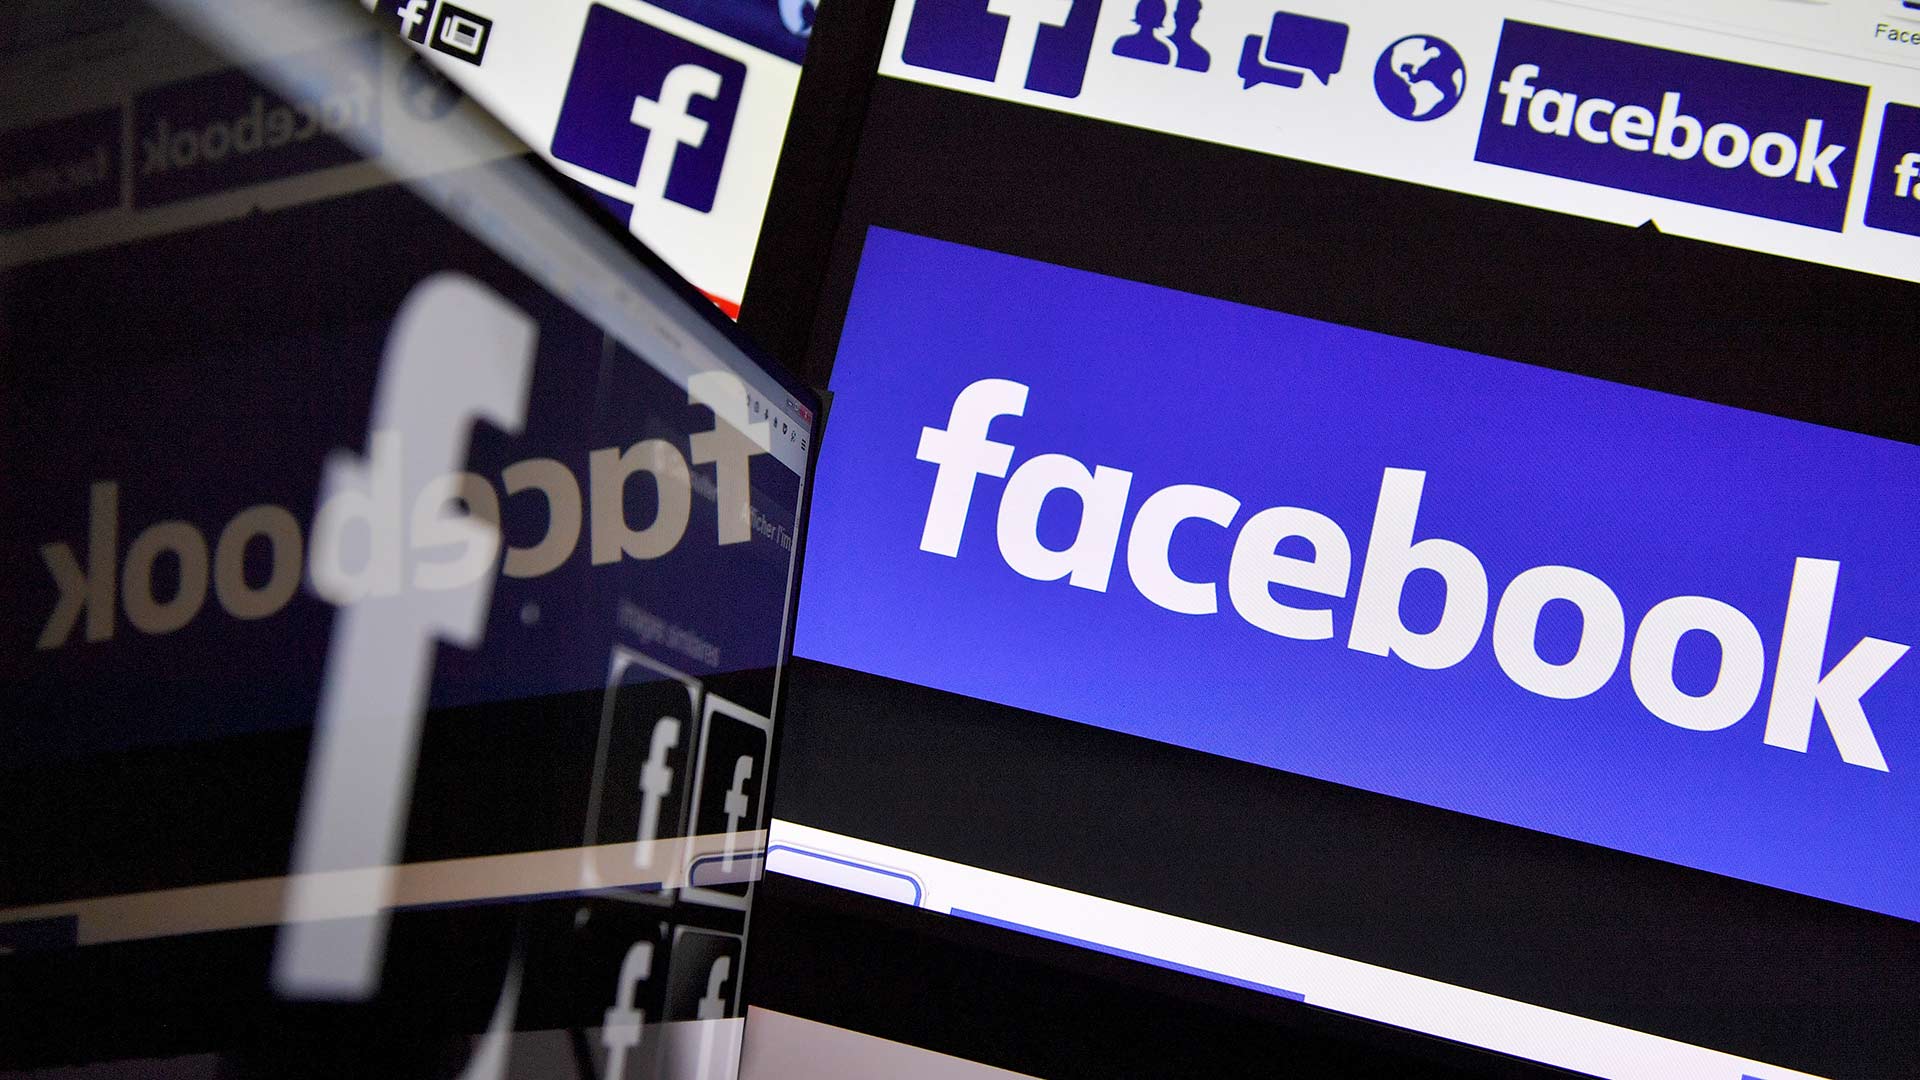 Facebook desactiva entre enero y marzo 2.190 millones de cuentas falsas